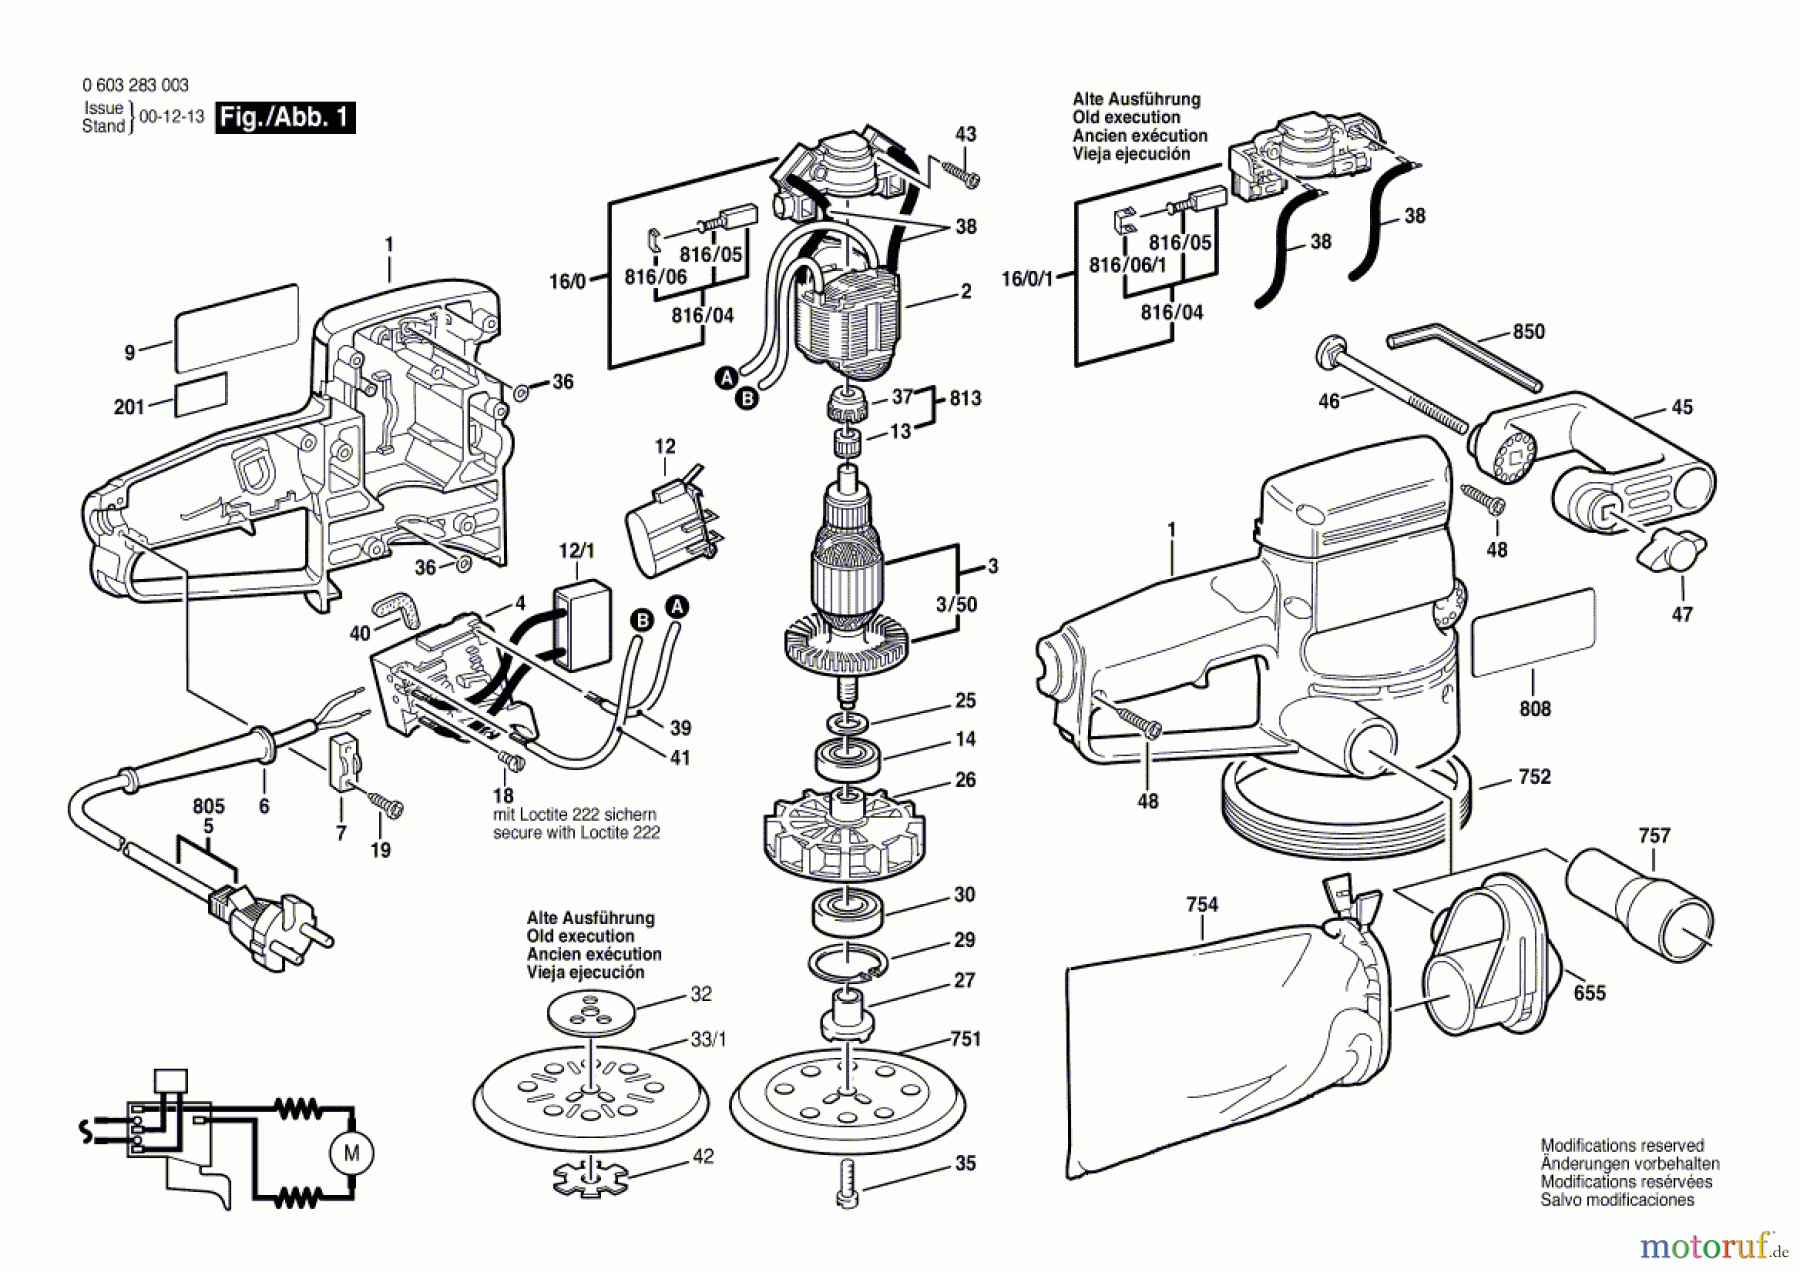  Bosch Werkzeug Exzenterschleifer PEX 125 A Seite 1